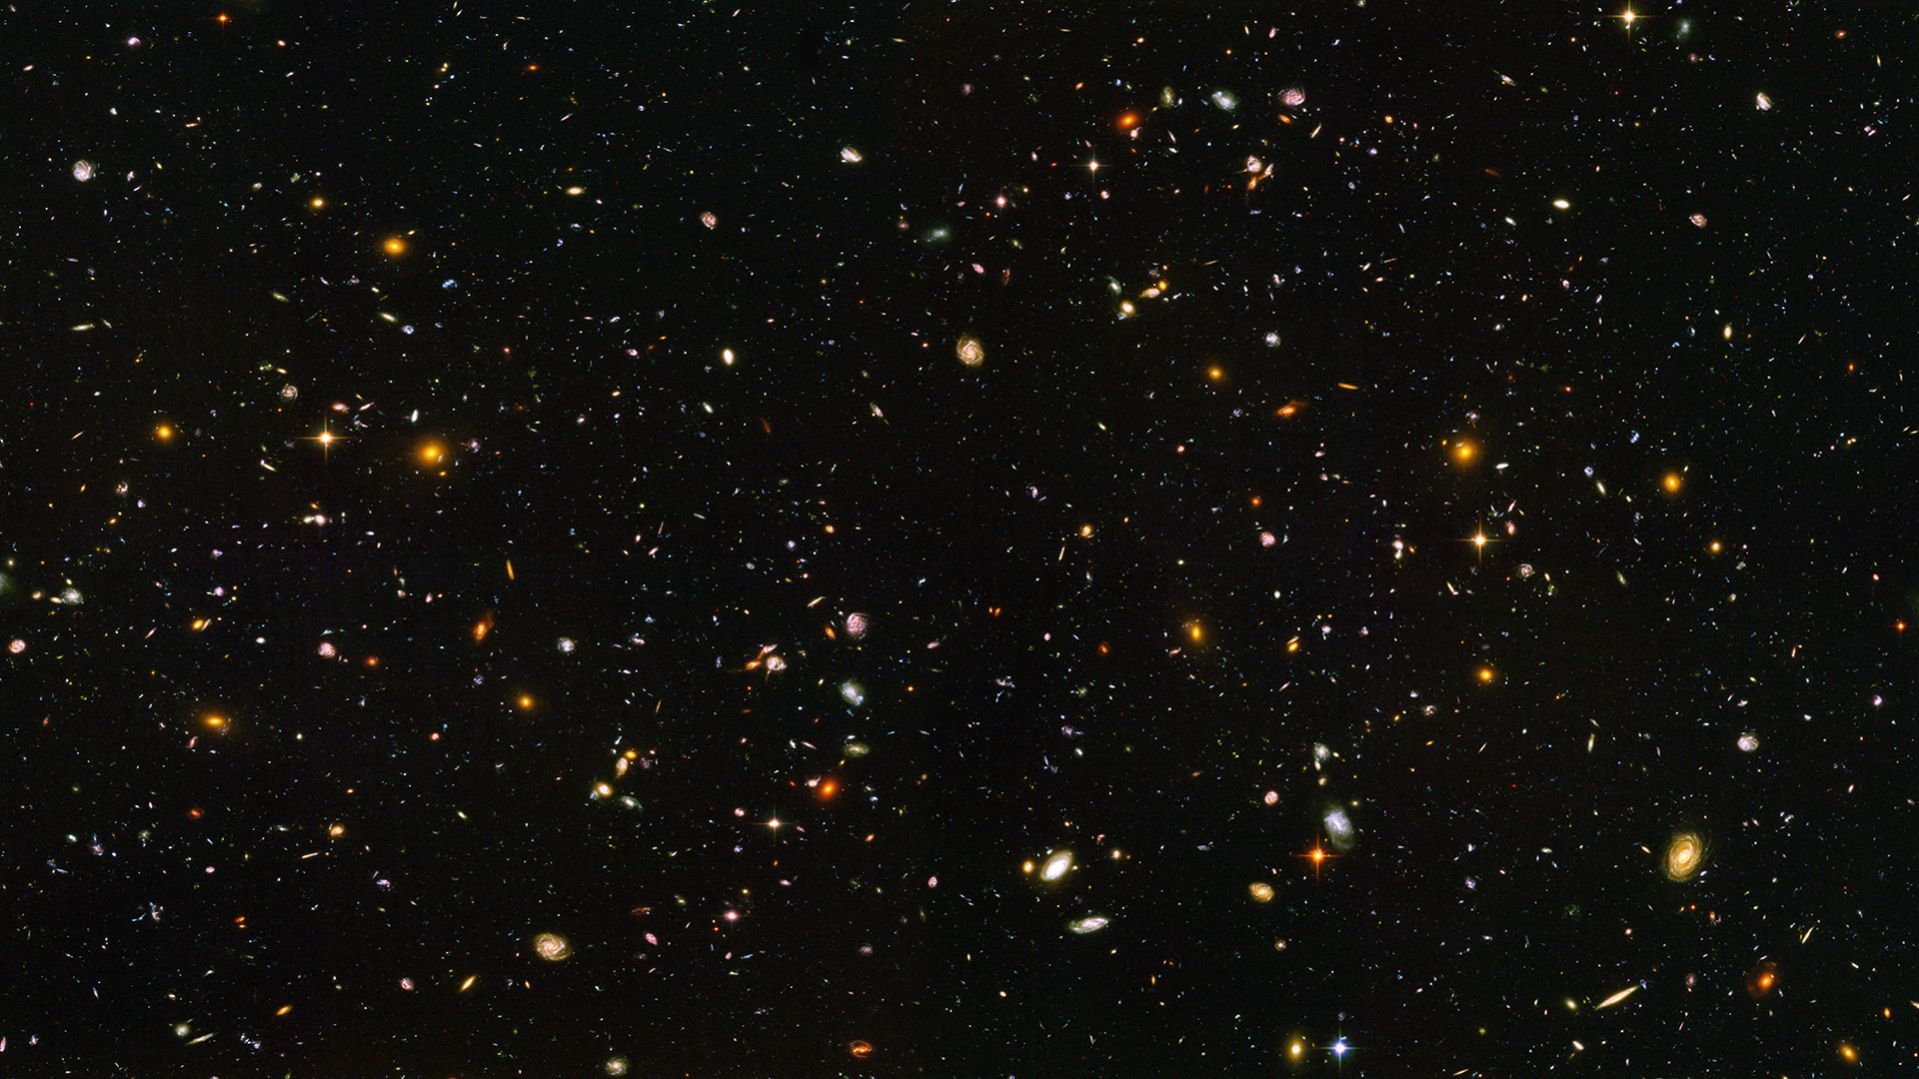 Hubble ultra deep wallpaper 1920x1080 - Imgur